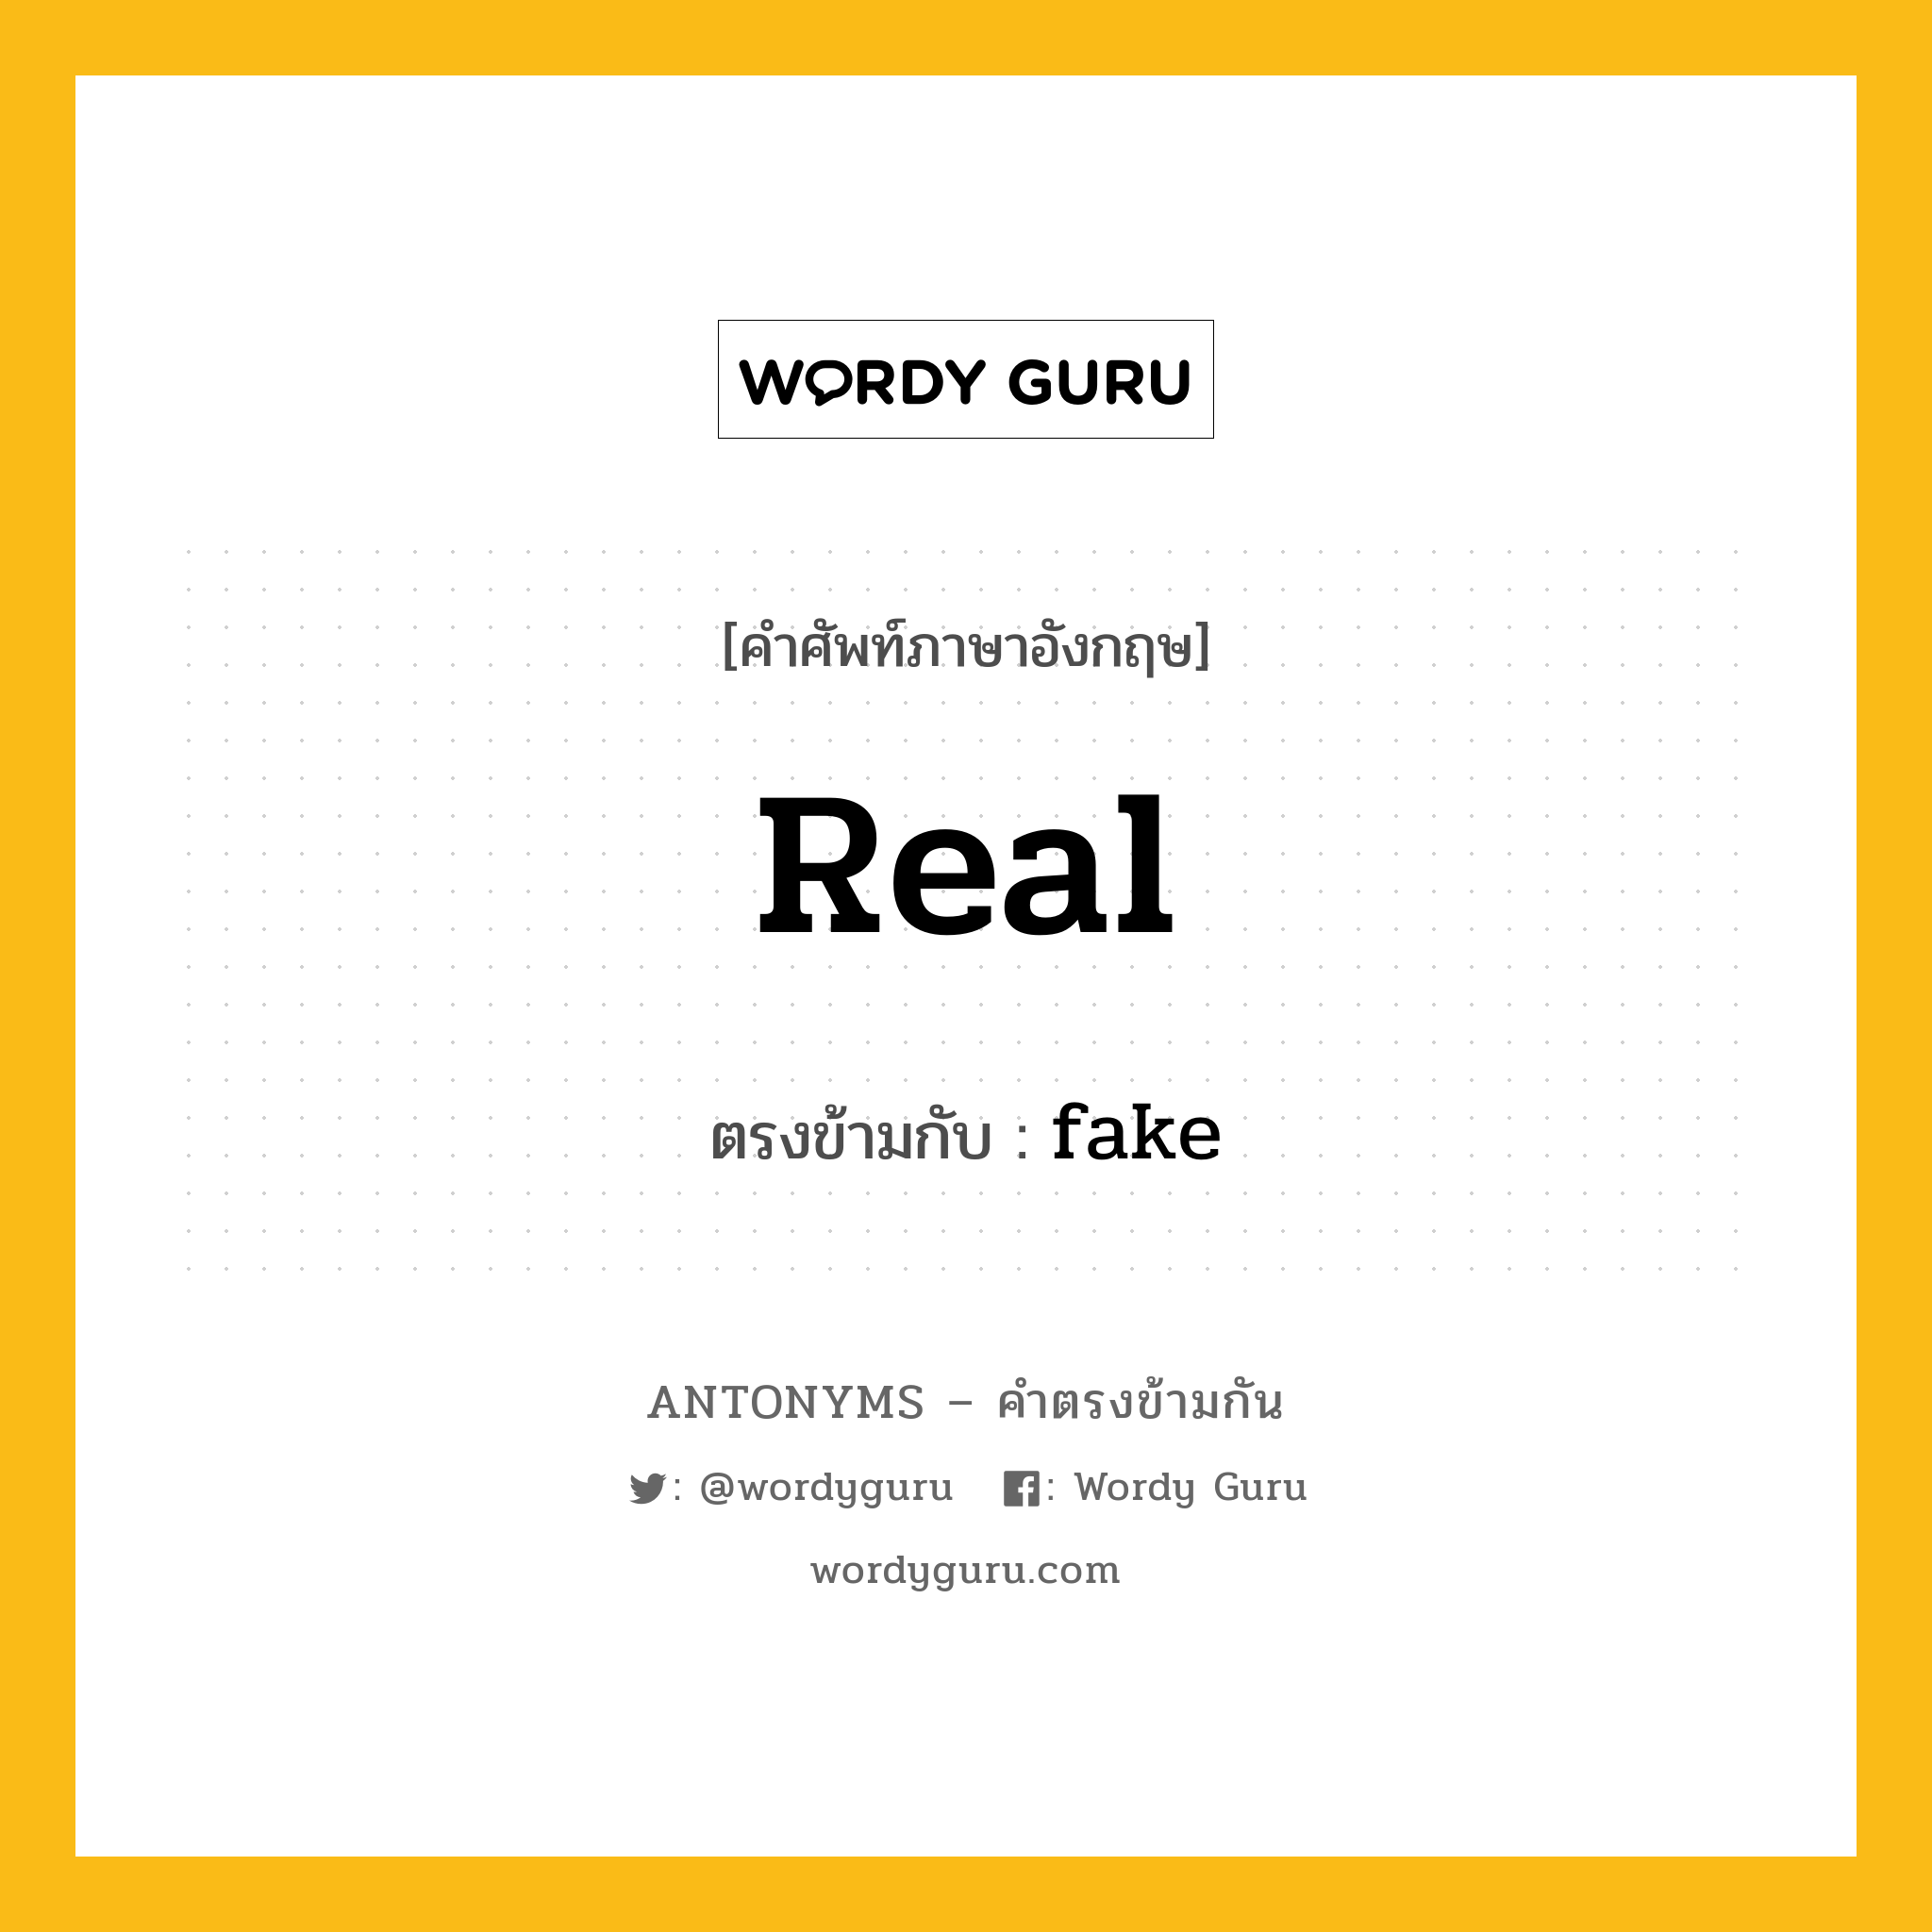 real เป็นคำตรงข้ามกับคำไหนบ้าง?, คำศัพท์ภาษาอังกฤษ real ตรงข้ามกับ fake หมวด fake